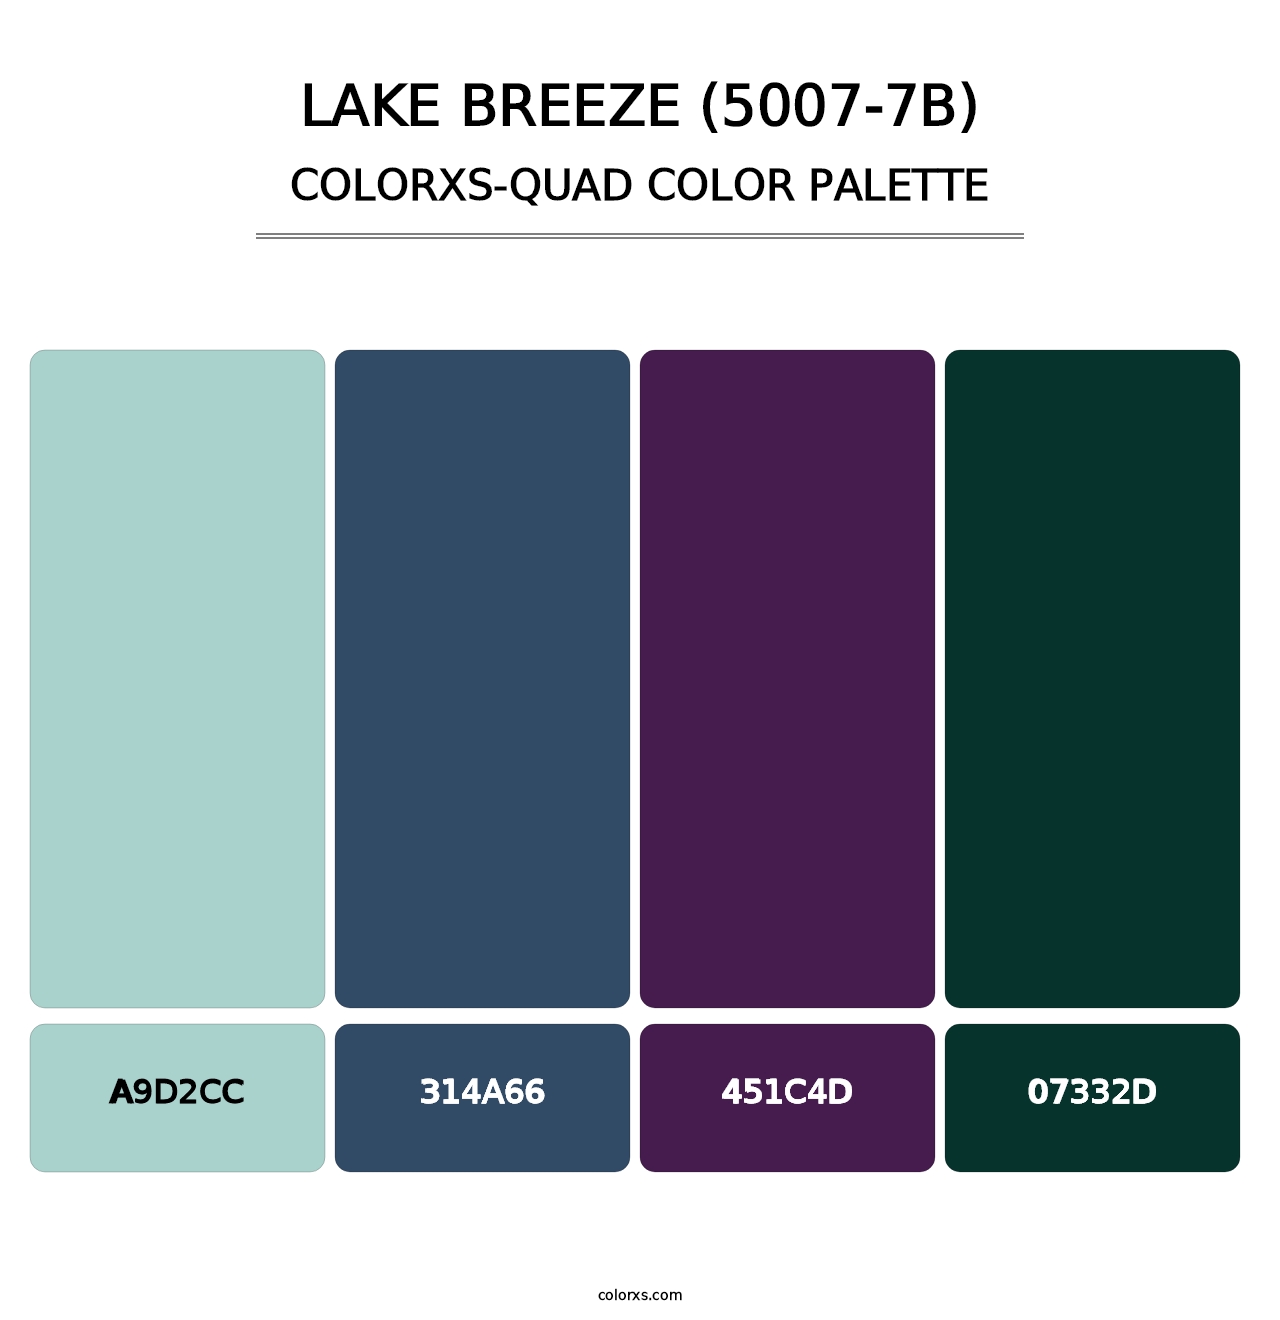 Lake Breeze (5007-7B) - Colorxs Quad Palette